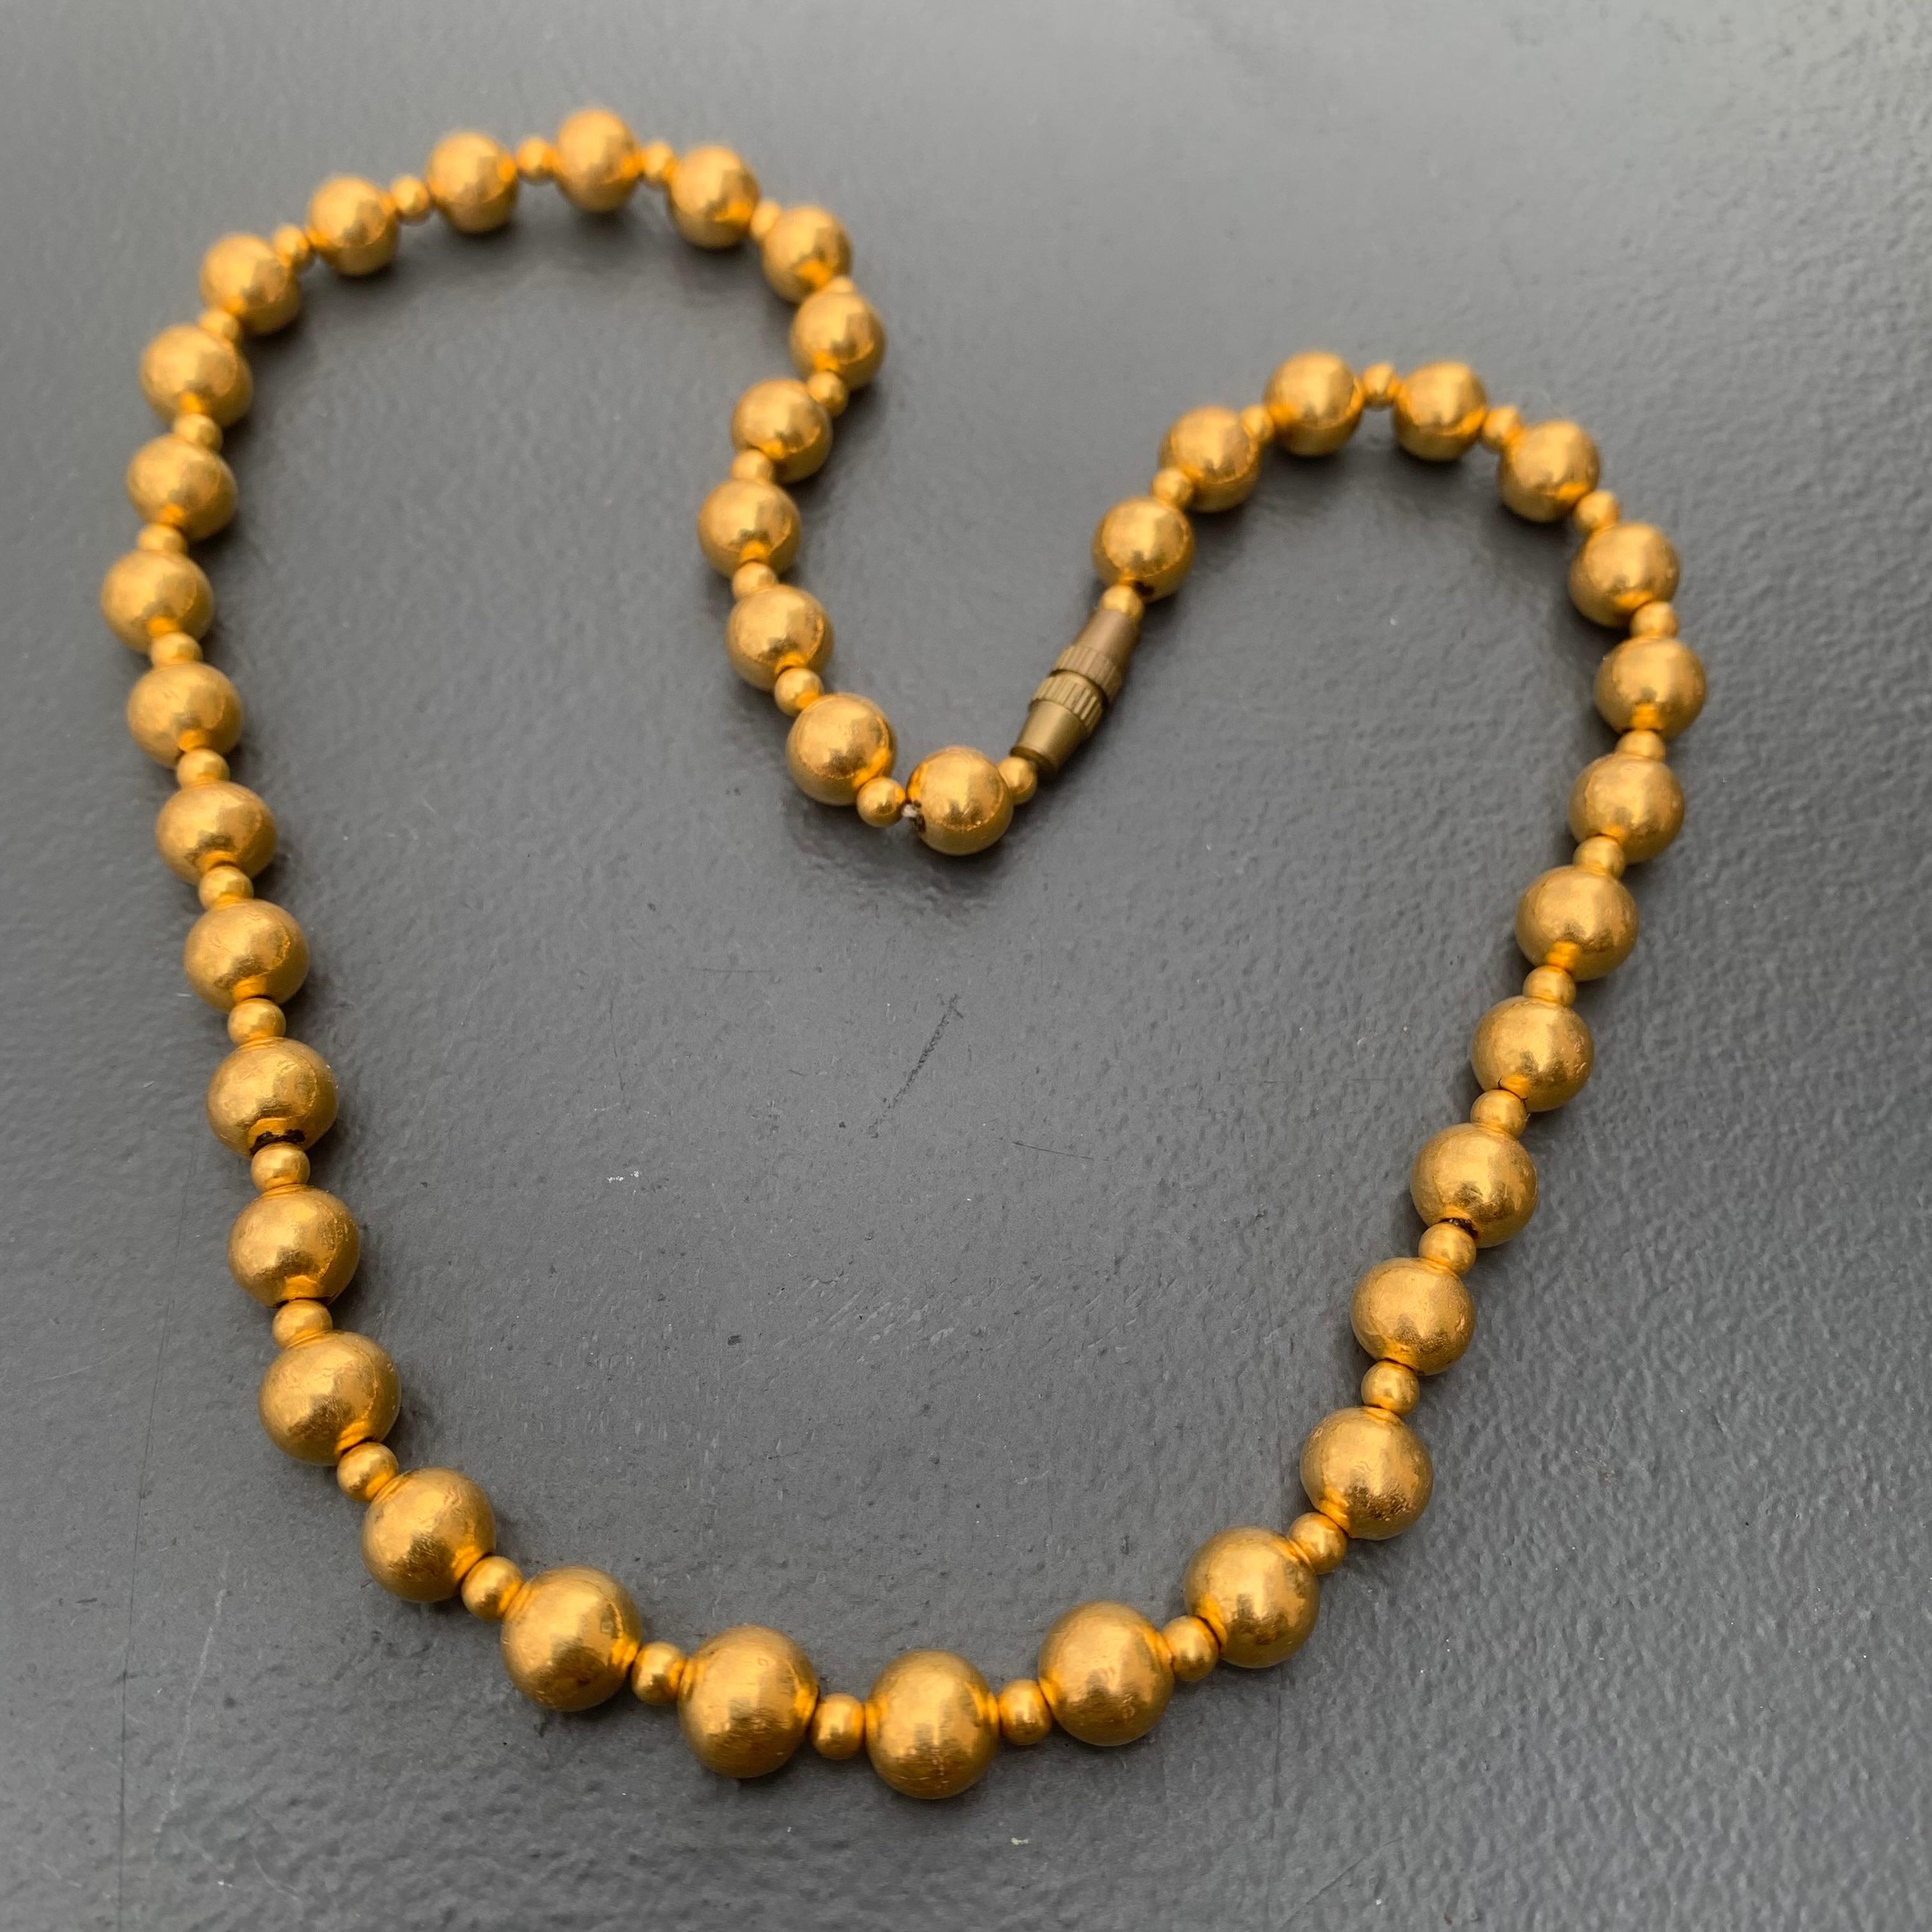 Vintage collier ras du cou jaune classique 20kt rempli de cire avec des perles rondes. Le collier est fabriqué à la main en Inde avec des perles de deux tailles et un fermoir en forme de barillet (pas en or mais en laiton).
Chaque perle est faite